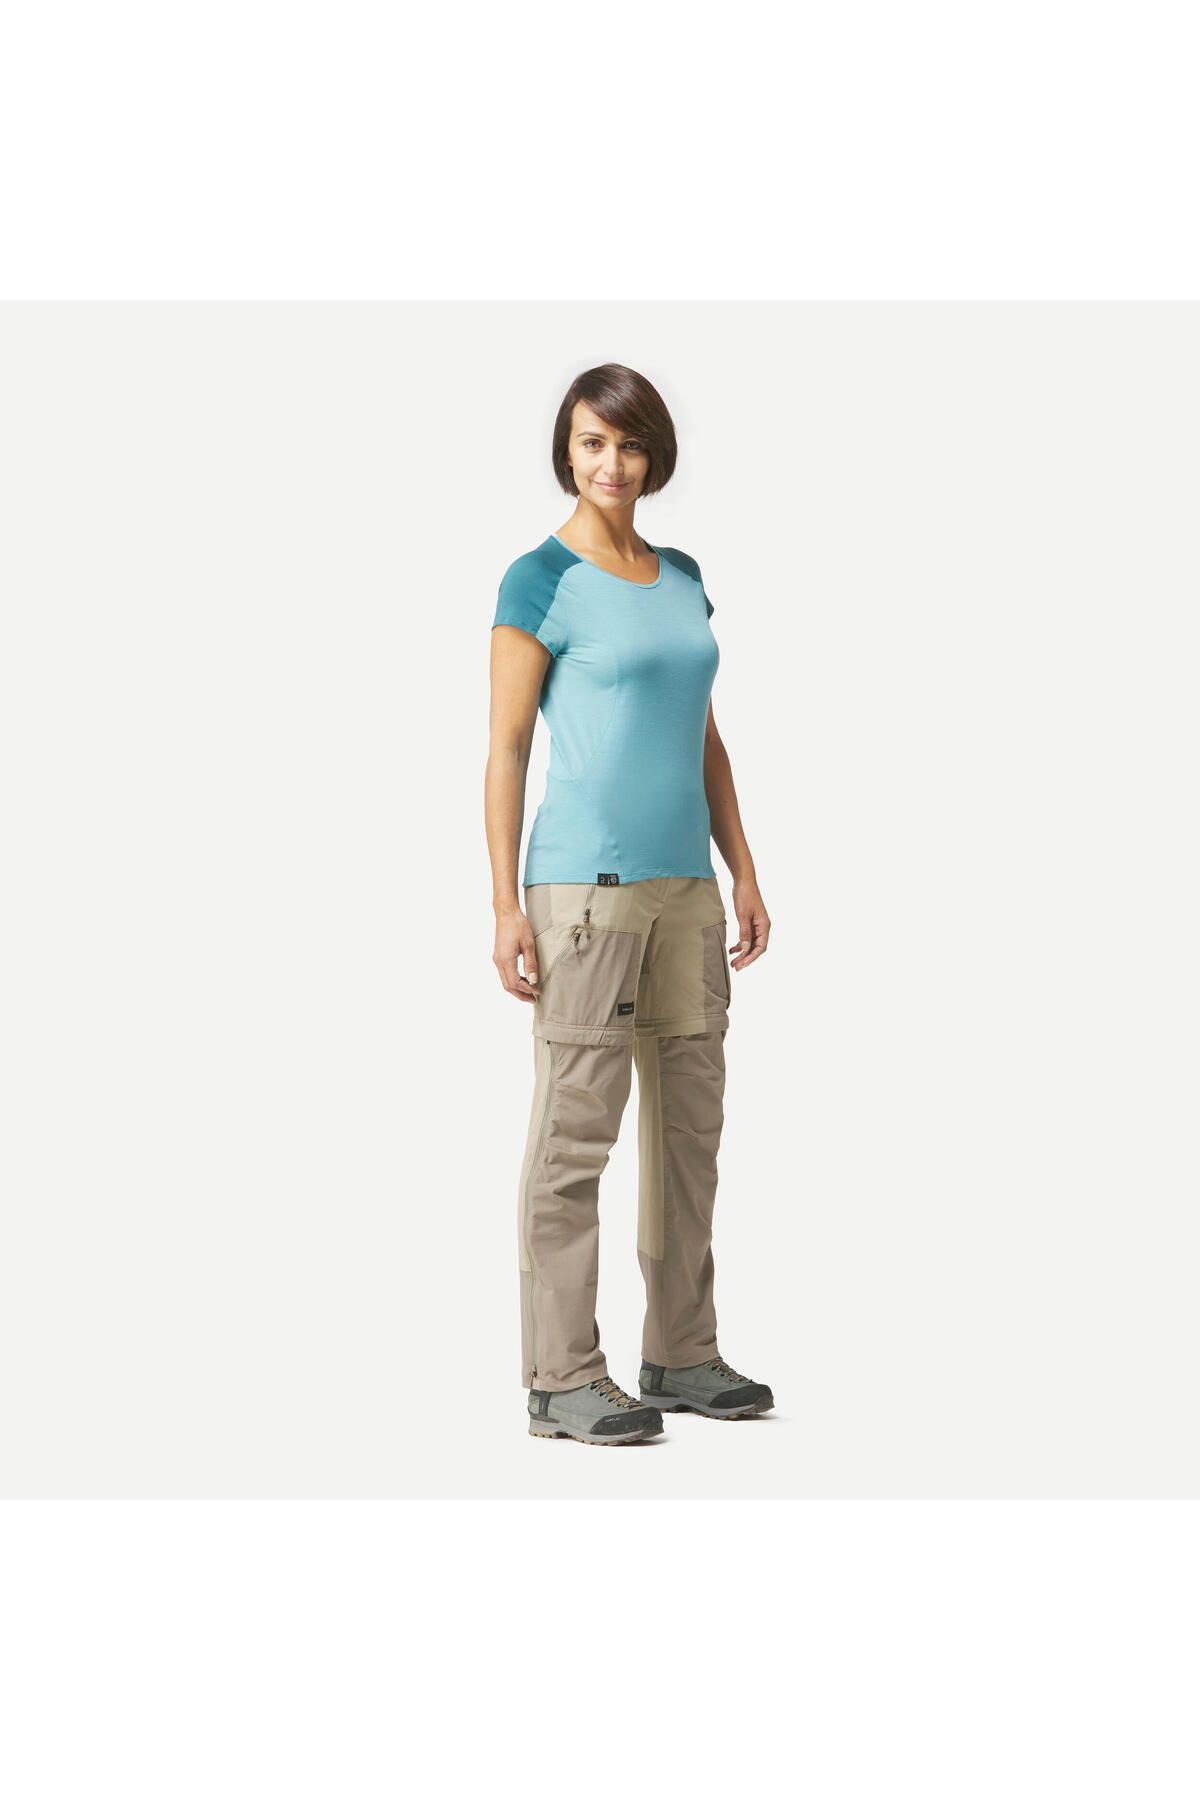 Decathlon Kadın Modüler Outdoor Trekking Pantolonu - Mavi - Mt500